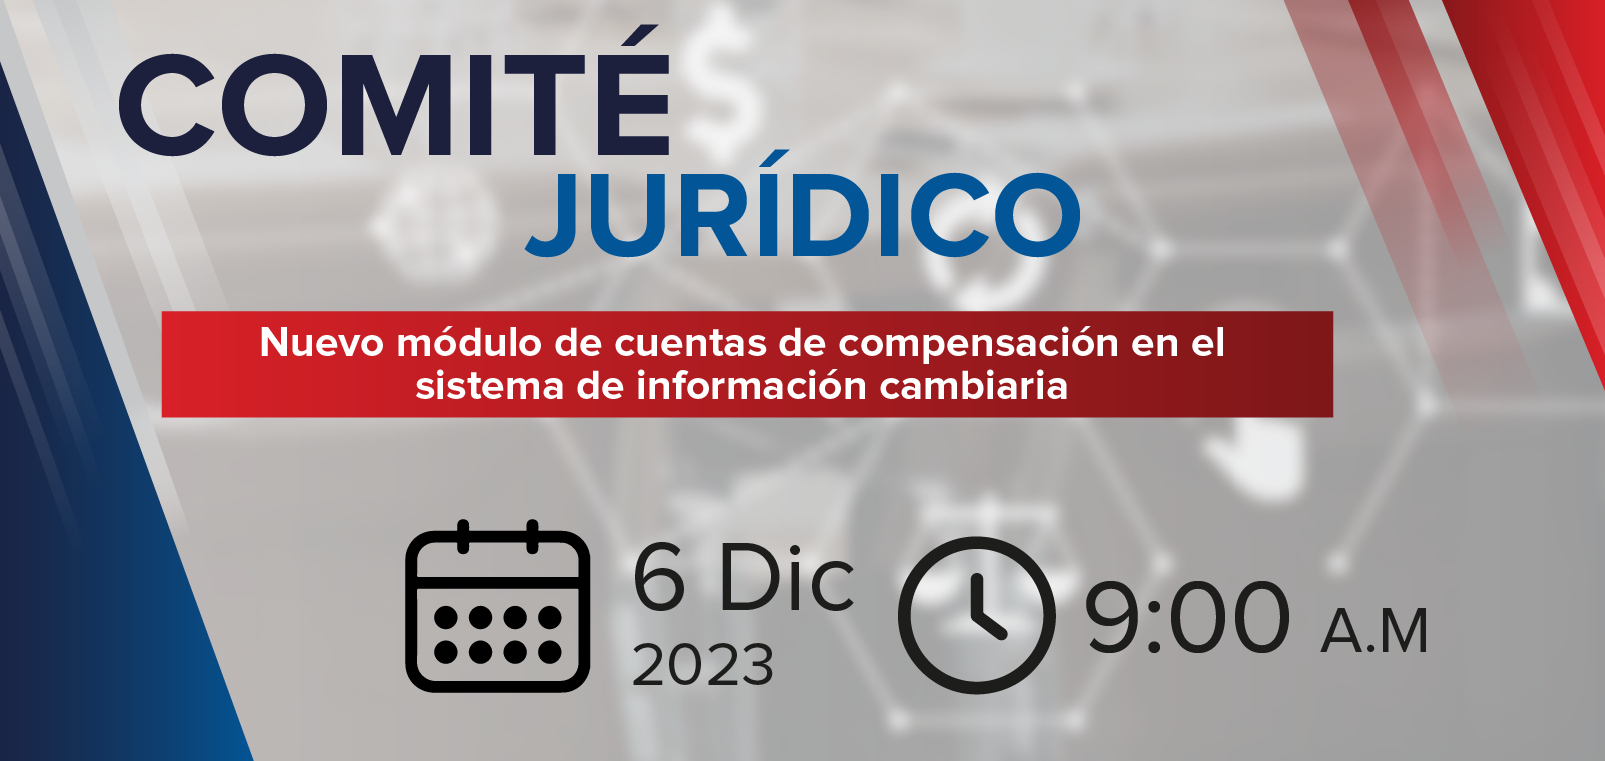 Comite Juridico: Nuevo módulo de cuentas de compensación en el sistema de información cambiaria